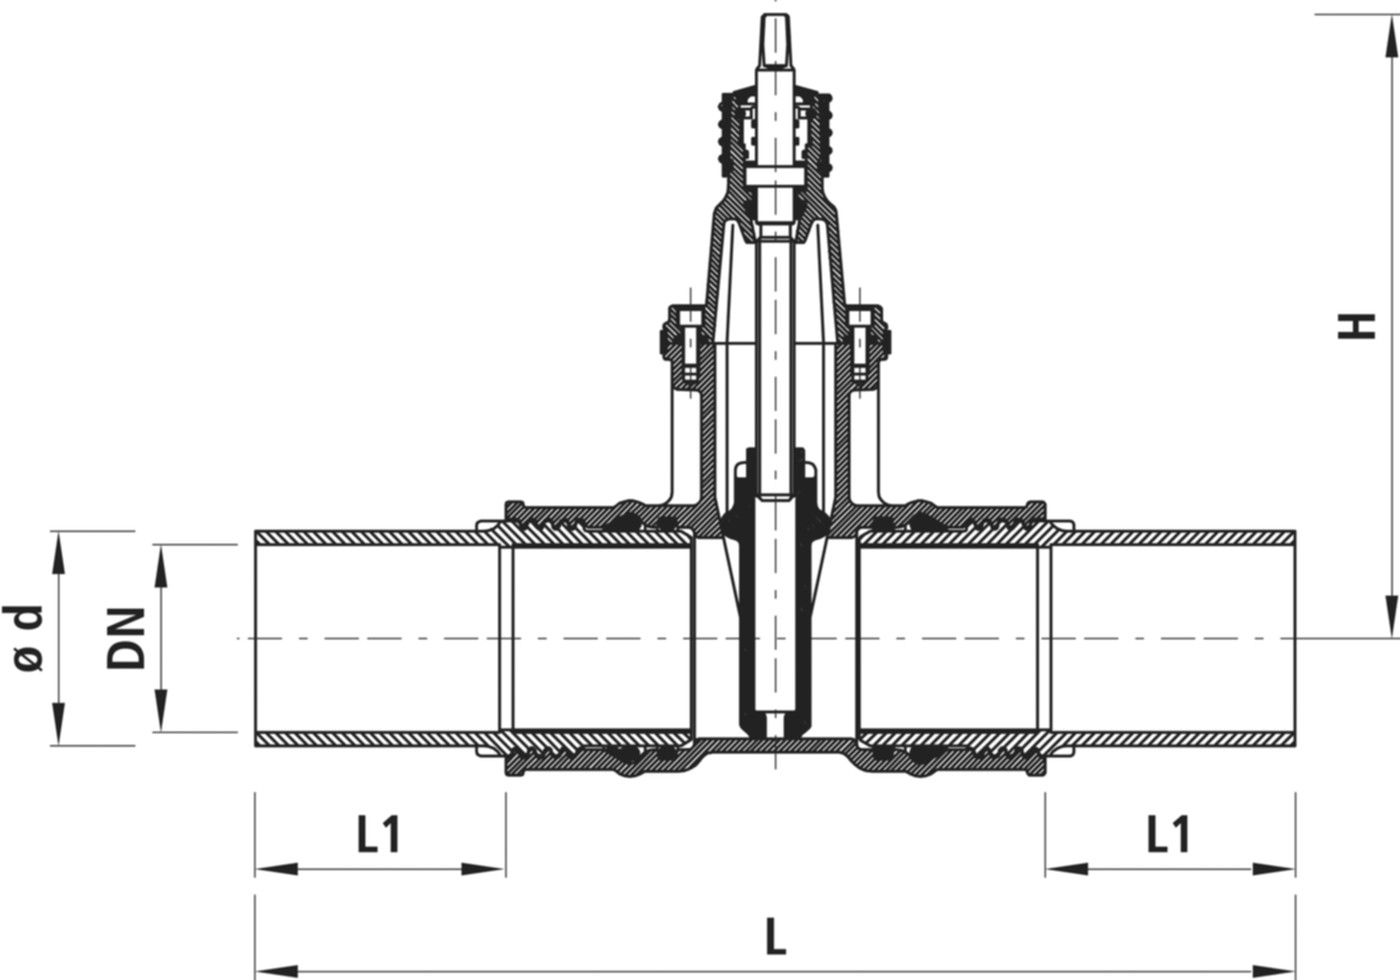 Einschweiss-Schieber für Gas 4815 DN 200 / d 250mm - Hawle Armaturen